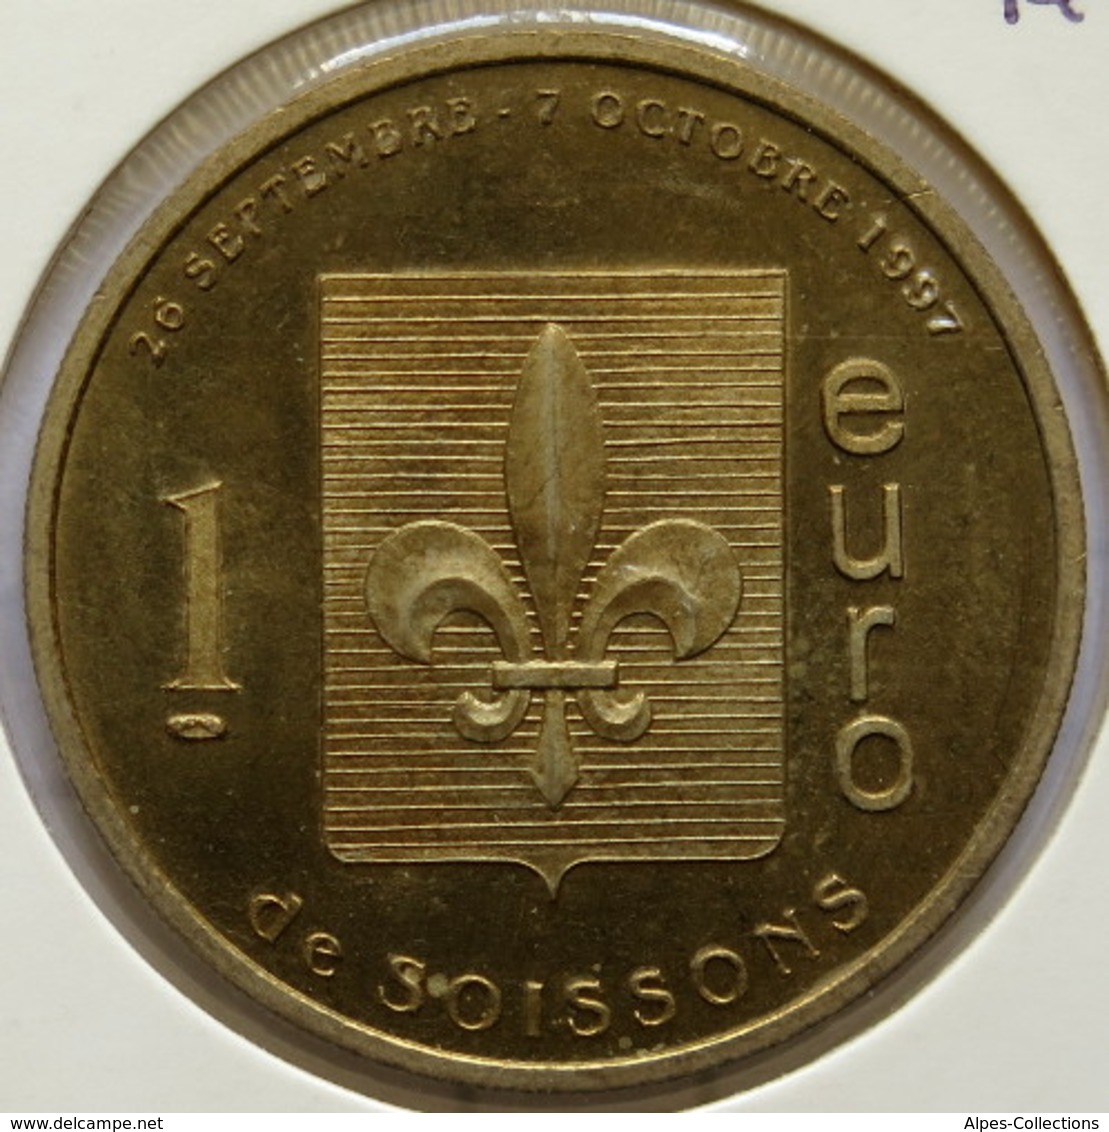 SOISSONS - EU0010.1 - 1 EURO DES VILLES - Réf: T391 - 1997 - Euro Delle Città